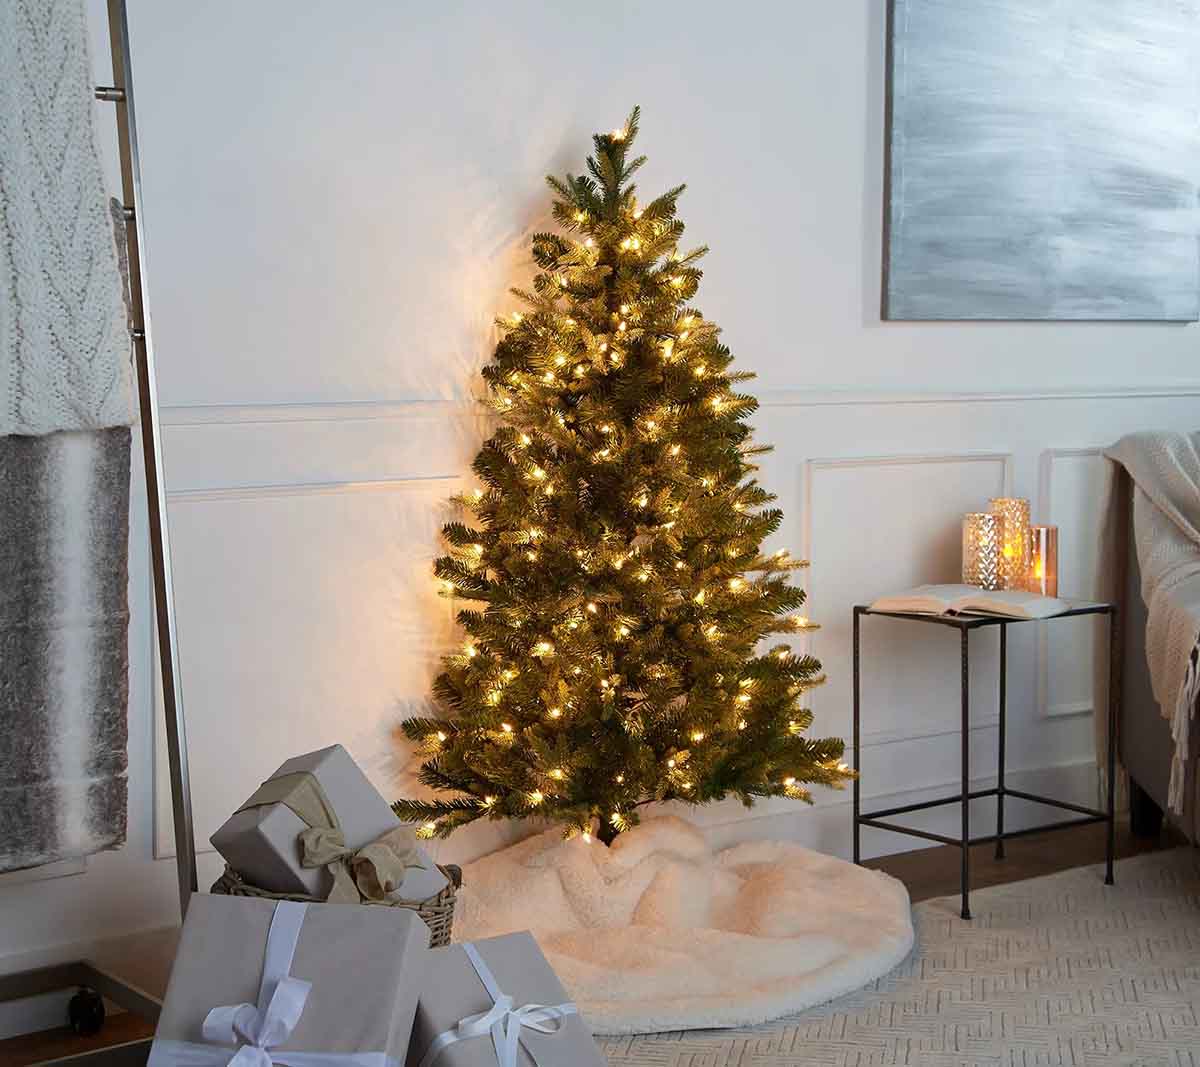 تزیین درخت کریسمس با ریسه نوری، دامن سفید و کادوهای خاکستری